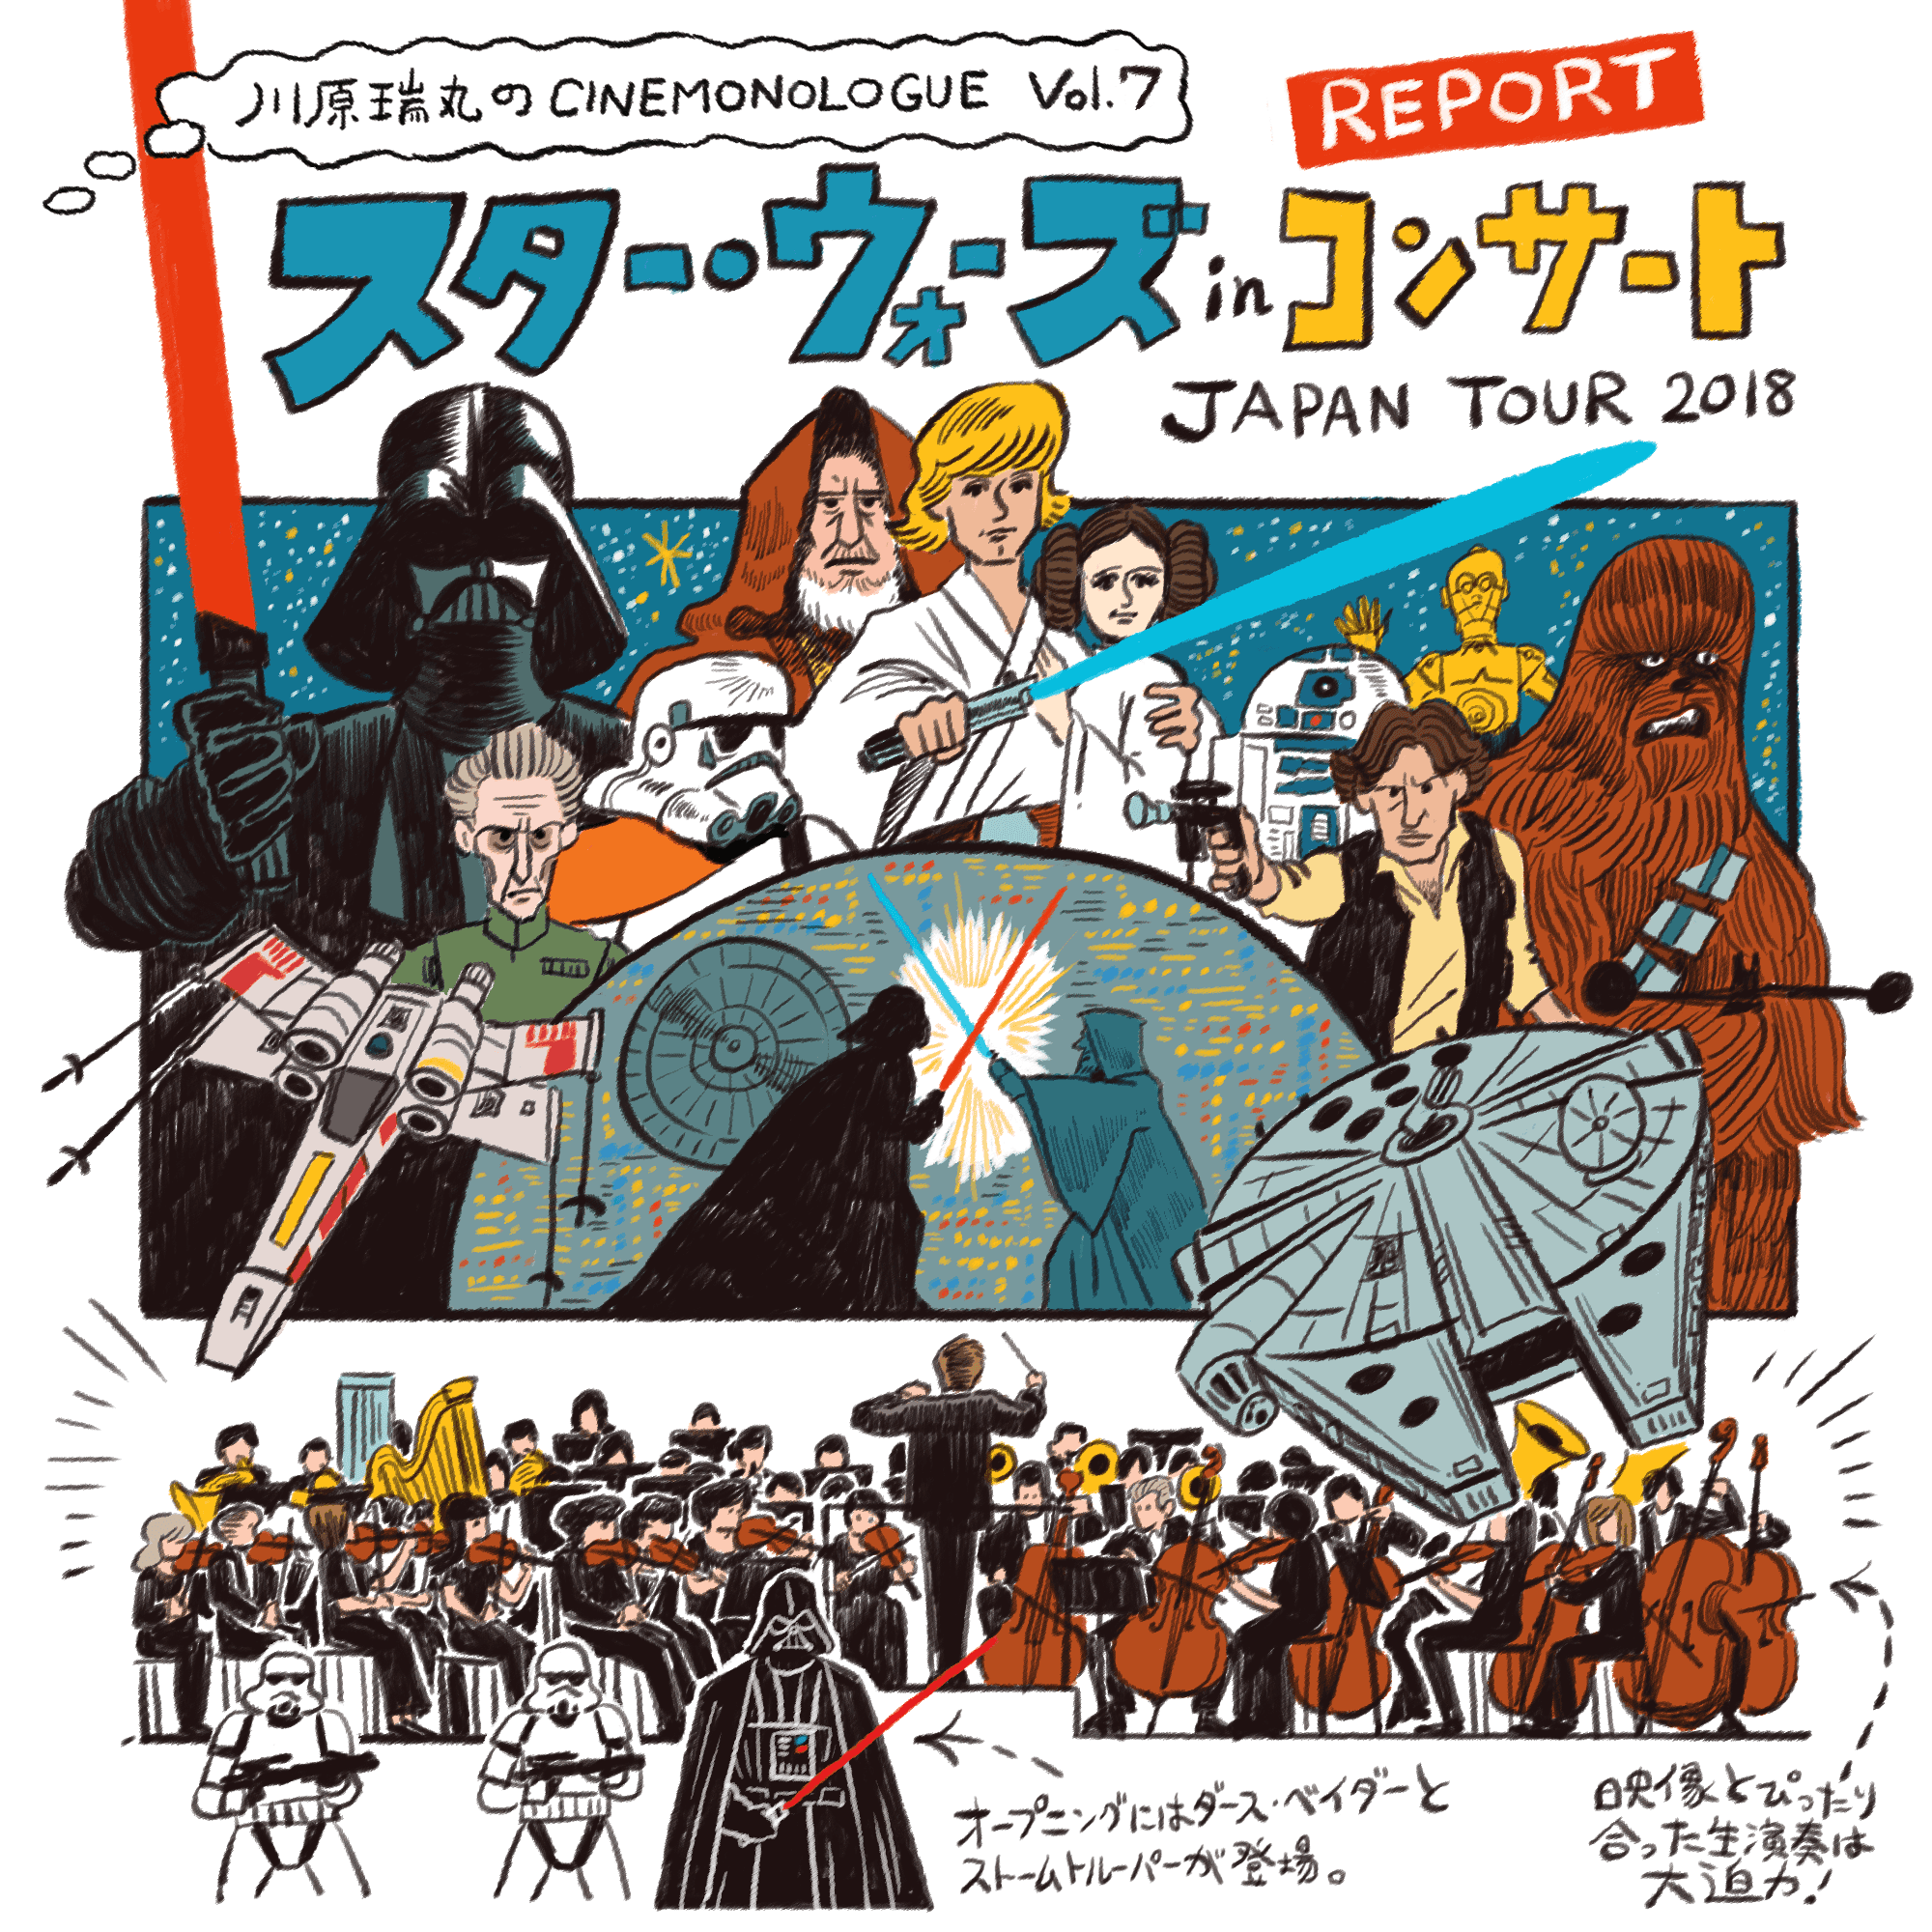 スター ウォーズ In コンサート Japan Tour 18 Report 川原瑞丸のcinemonologue Vol 7 2ページ目 Cinemore シネモア